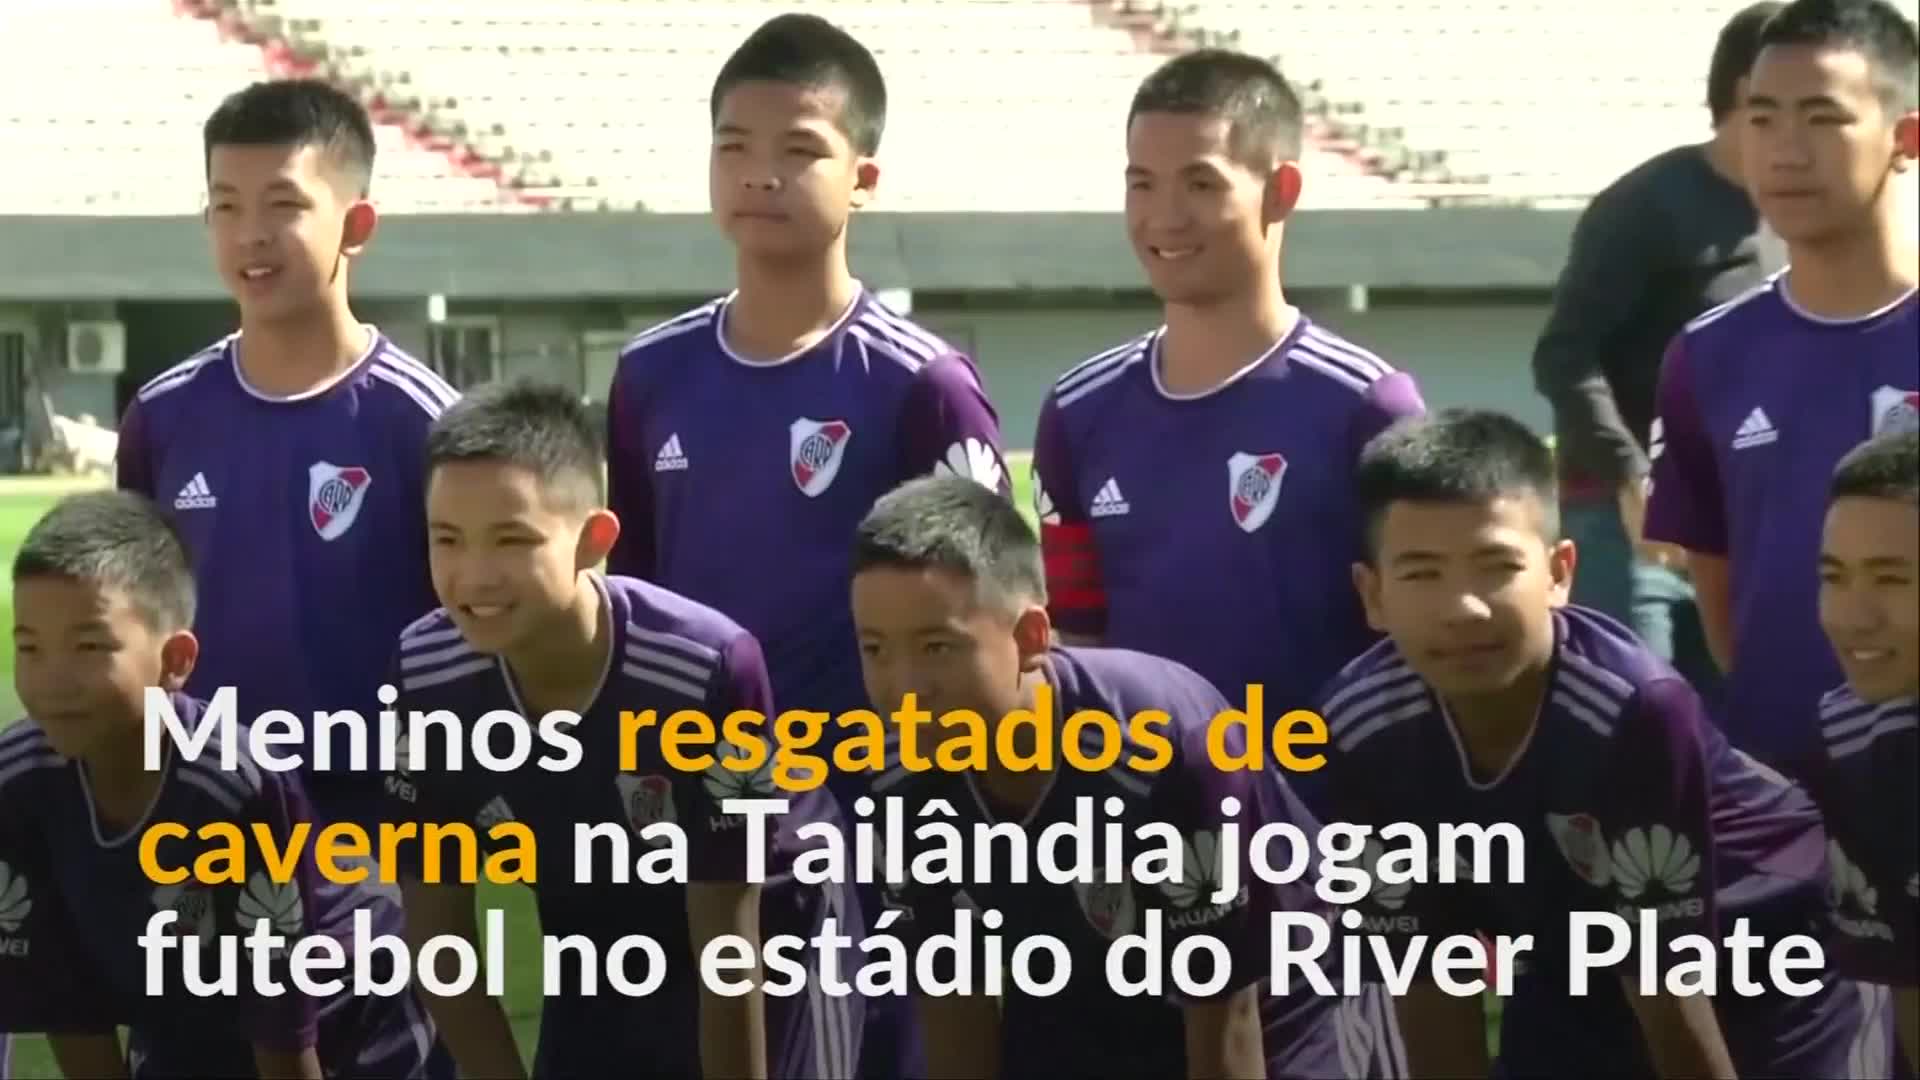 Vídeo: Meninos resgatados de caverna na Tailândia jogam bola na Argentina